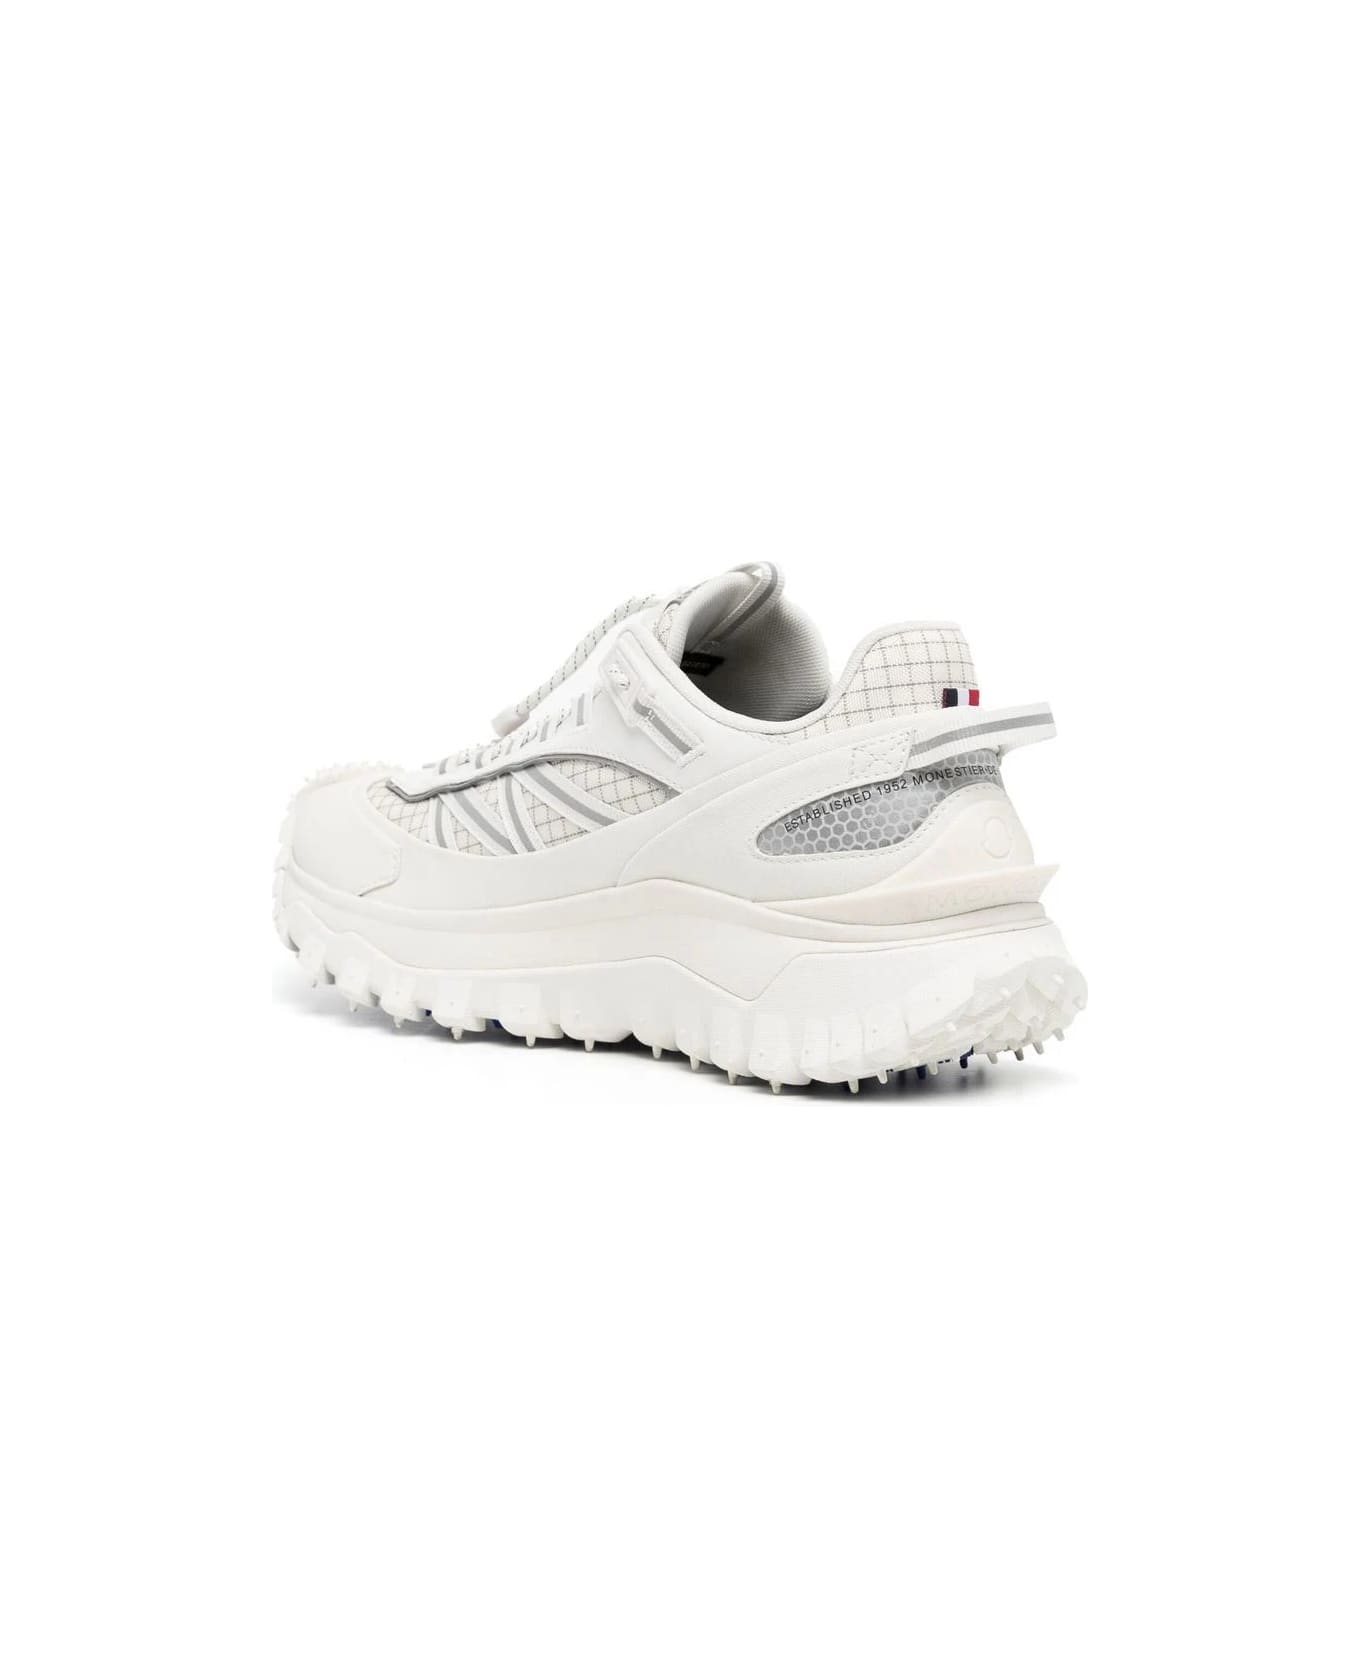 Moncler White Trailgrip Gtx Sneakers - White